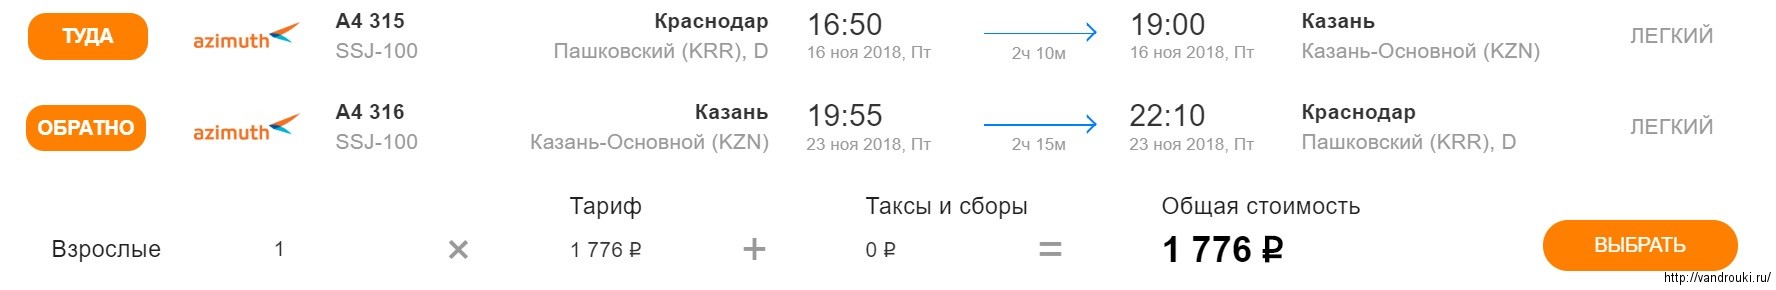 Билет на самолет из москвы в ростов билеты хабаровск ростов на дону на самолет